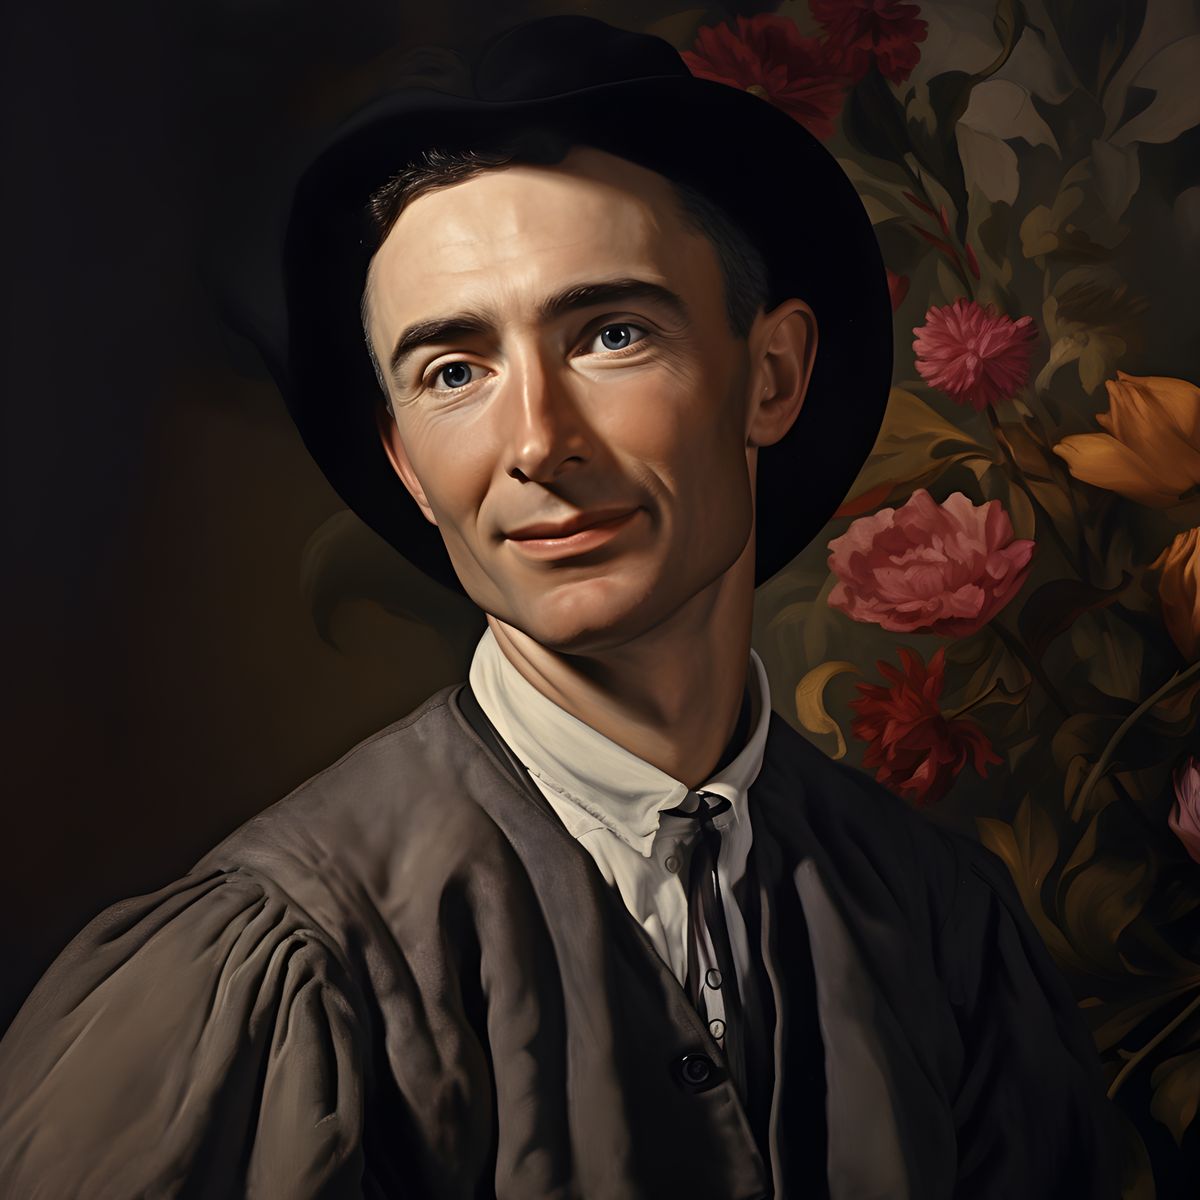 Robert Oppenheimer Leinwand - Renaissance Portrait - Poster bei HappyHugPixels